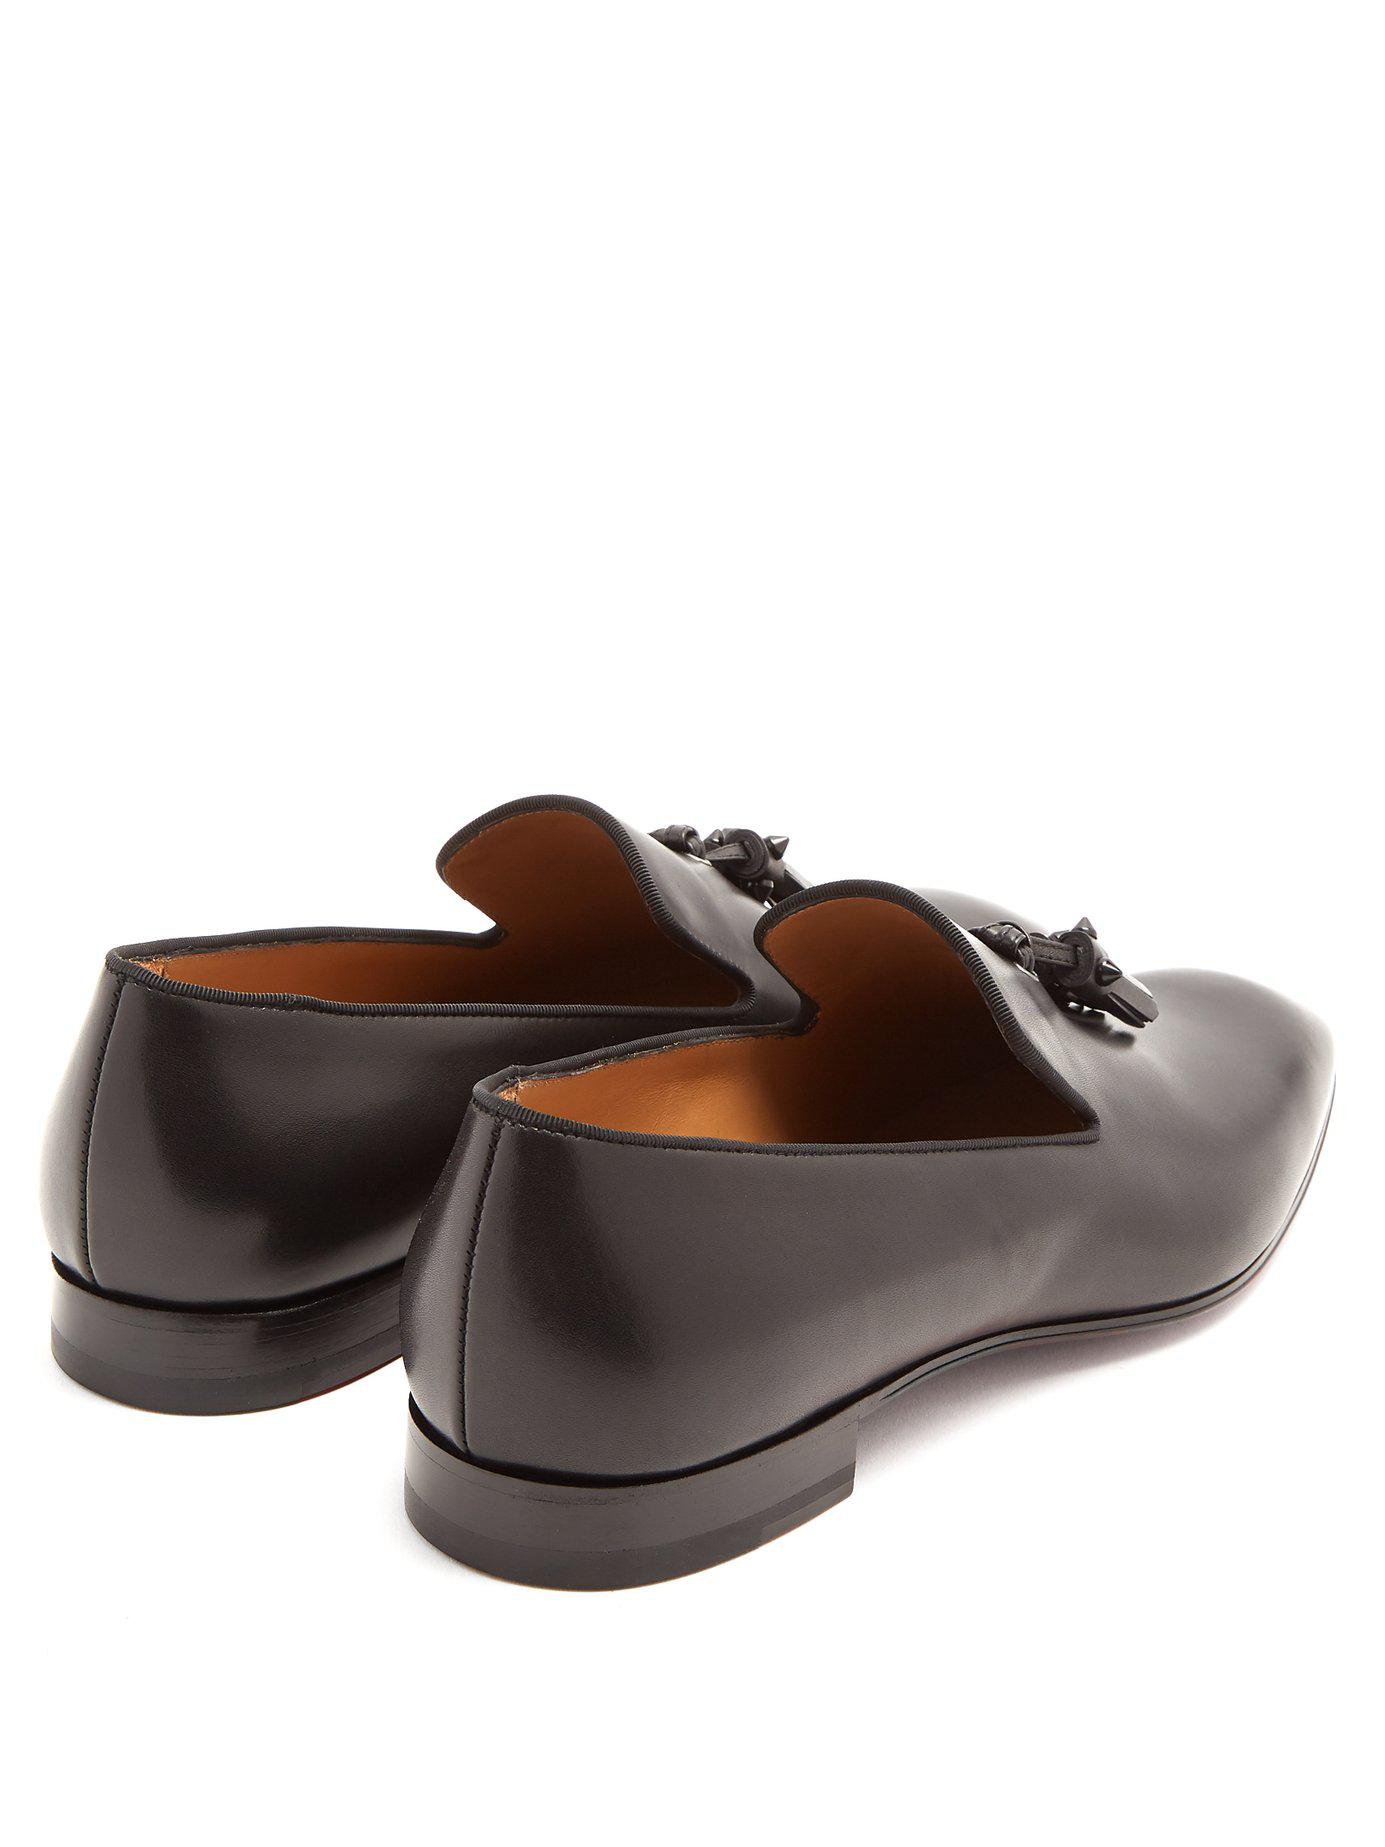 Christian Louboutin Dandelion Tassel Embellished Leather Loafer in 